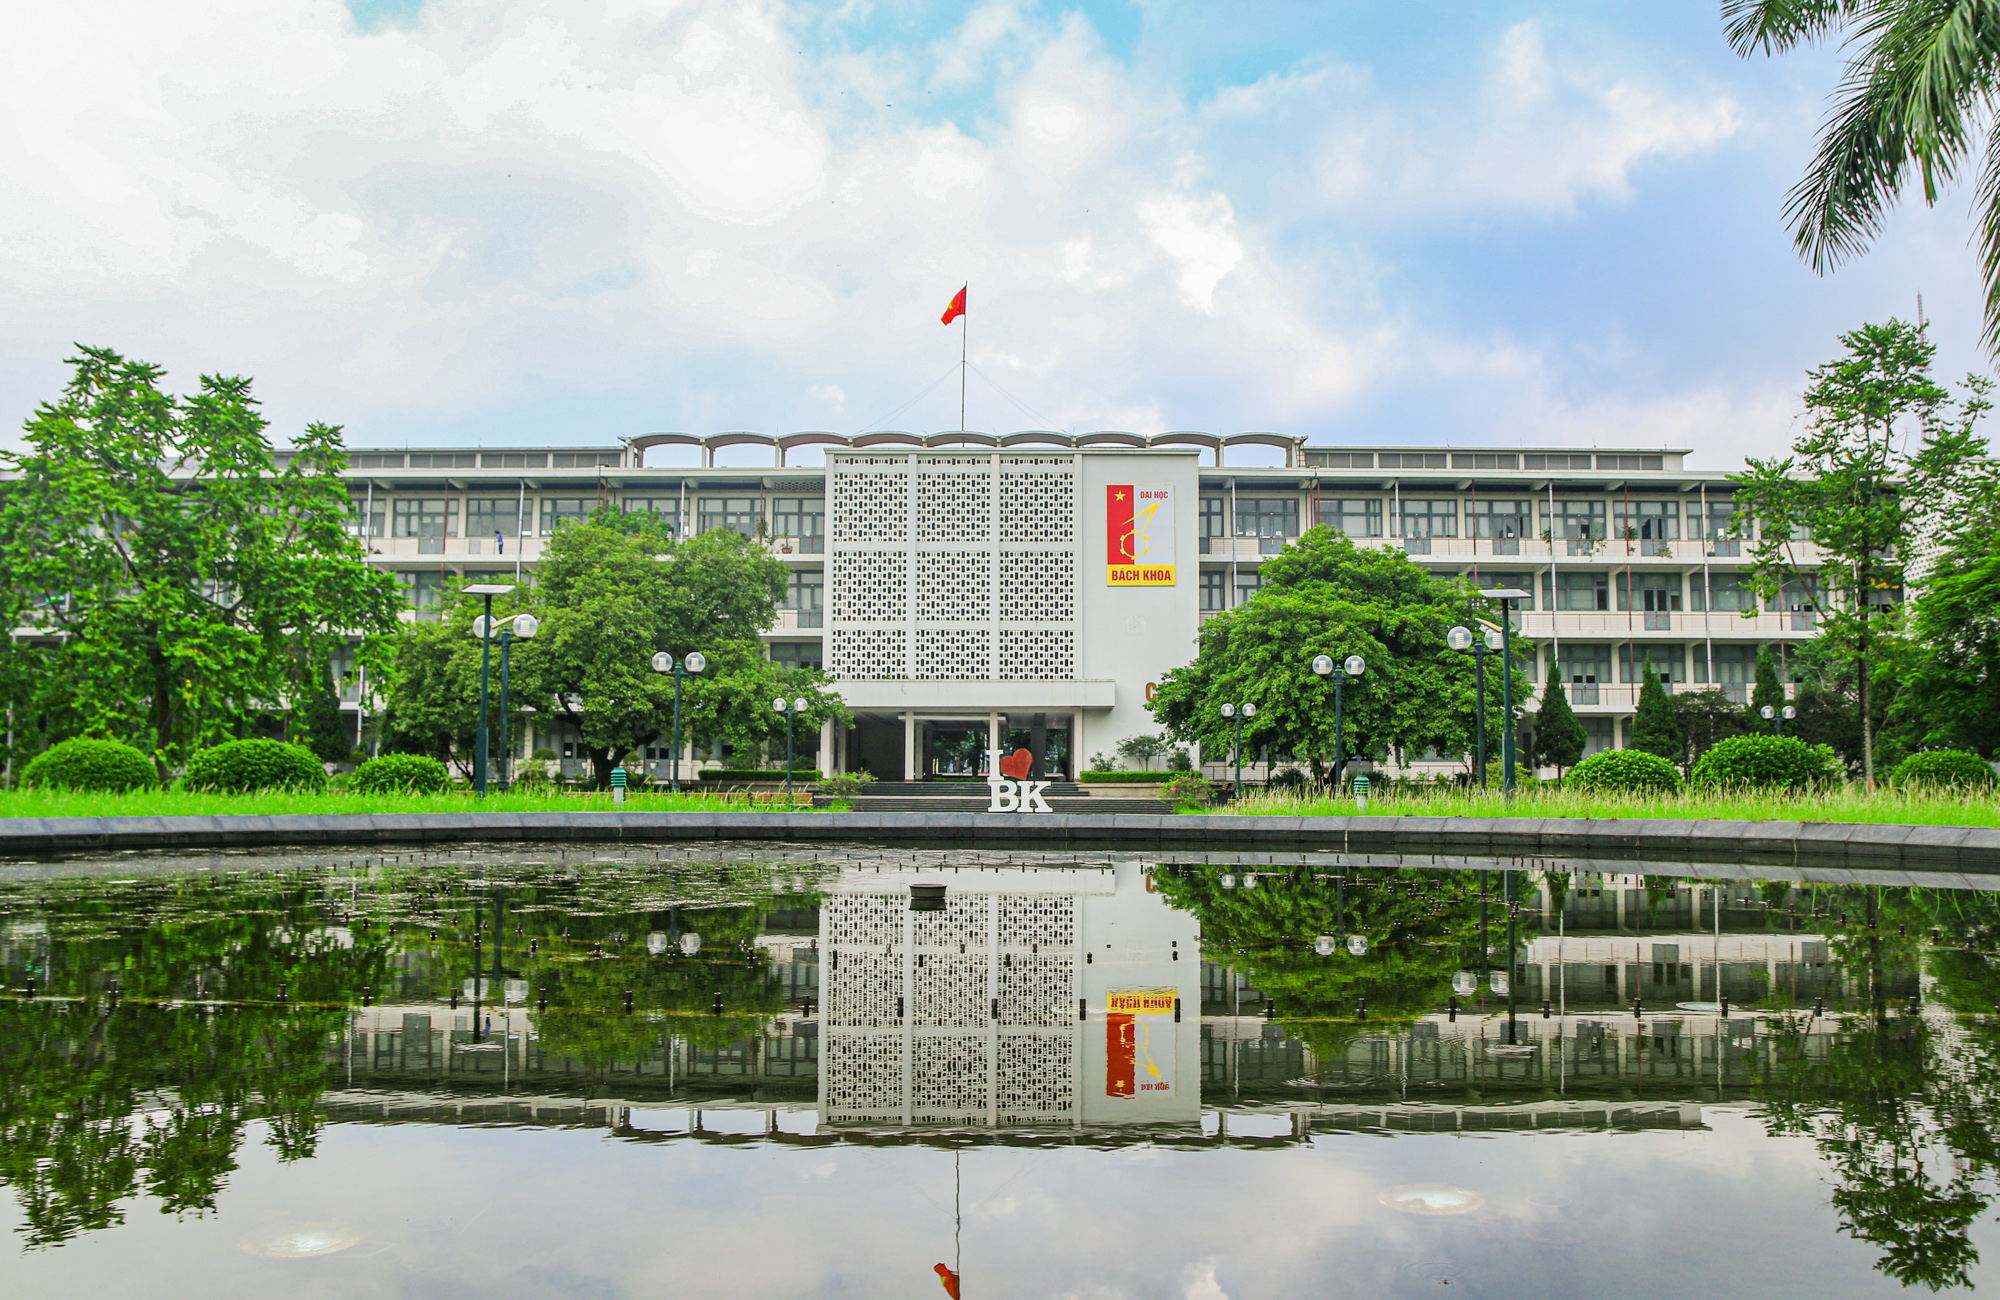 Đại học Bách Khoa Hà Nội 2024 là một trong những trường đại học hàng đầu trong ngành kỹ thuật Việt Nam, nơi sinh viên được học tập và nghiên cứu trong môi trường thiết bị và công nghệ hiện đại. Trường đại học này đang phát triển các chương trình đào tạo mới để đáp ứng các yêu cầu của thị trường lao động.